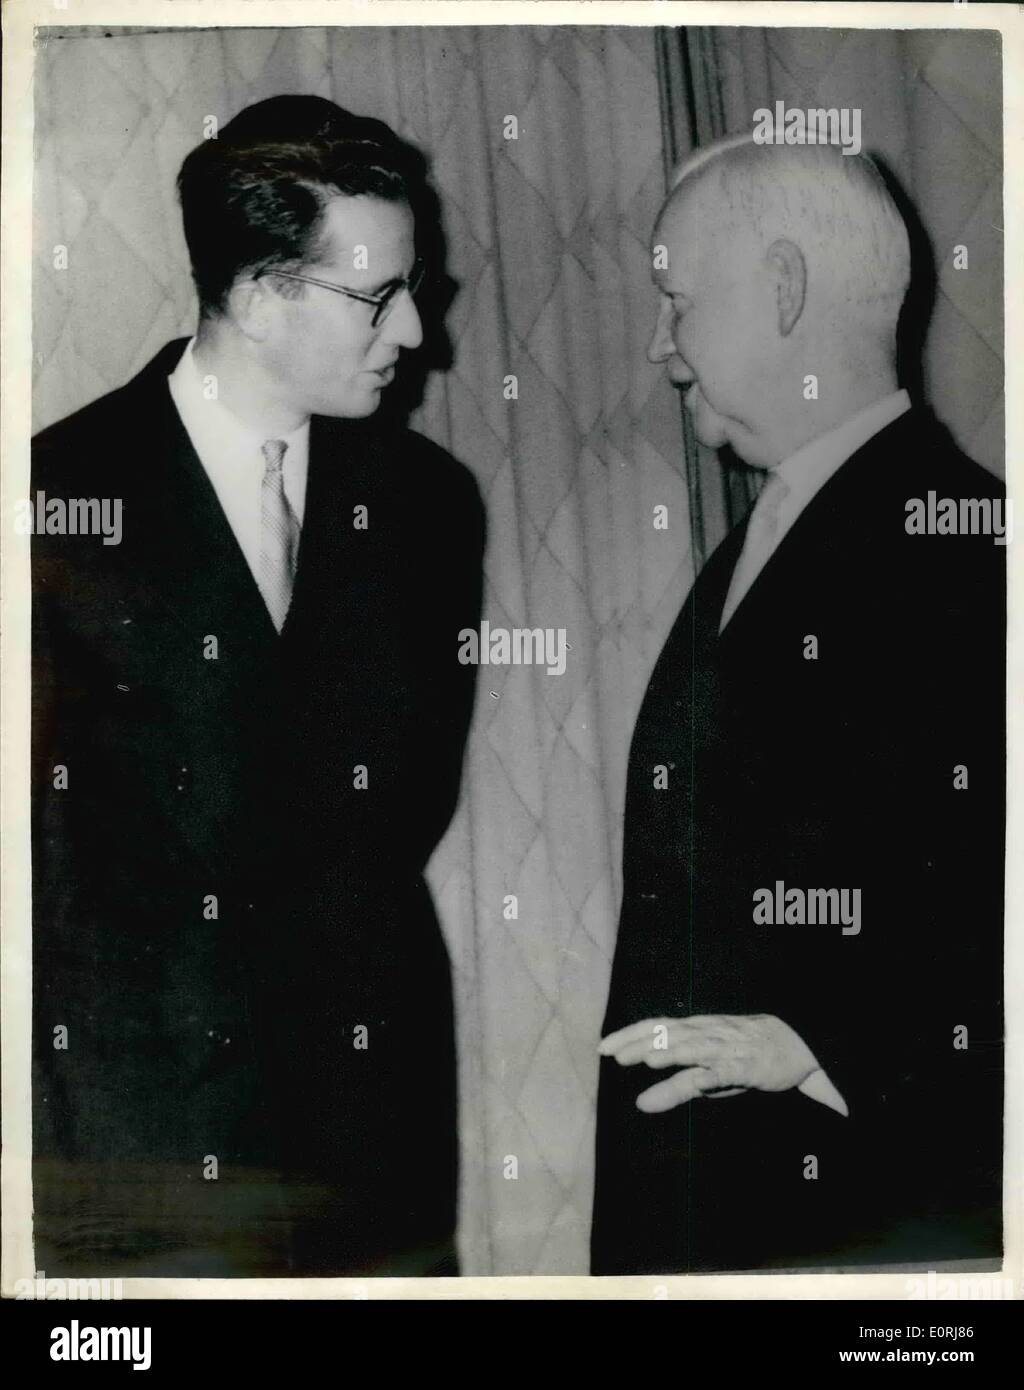 10 octobre 1959 - Le Roi Baudouin rencontre le président Lubke ; photo montre le roi Boudouin des Belges qui se sont rendus à l'Allemagne de l'Ouest cette semaine pour un trois jour inspection de son troope illustré d'être accueilli par le président pour le thé à la Villa Lubke, Hammerscmidt, hier. Banque D'Images